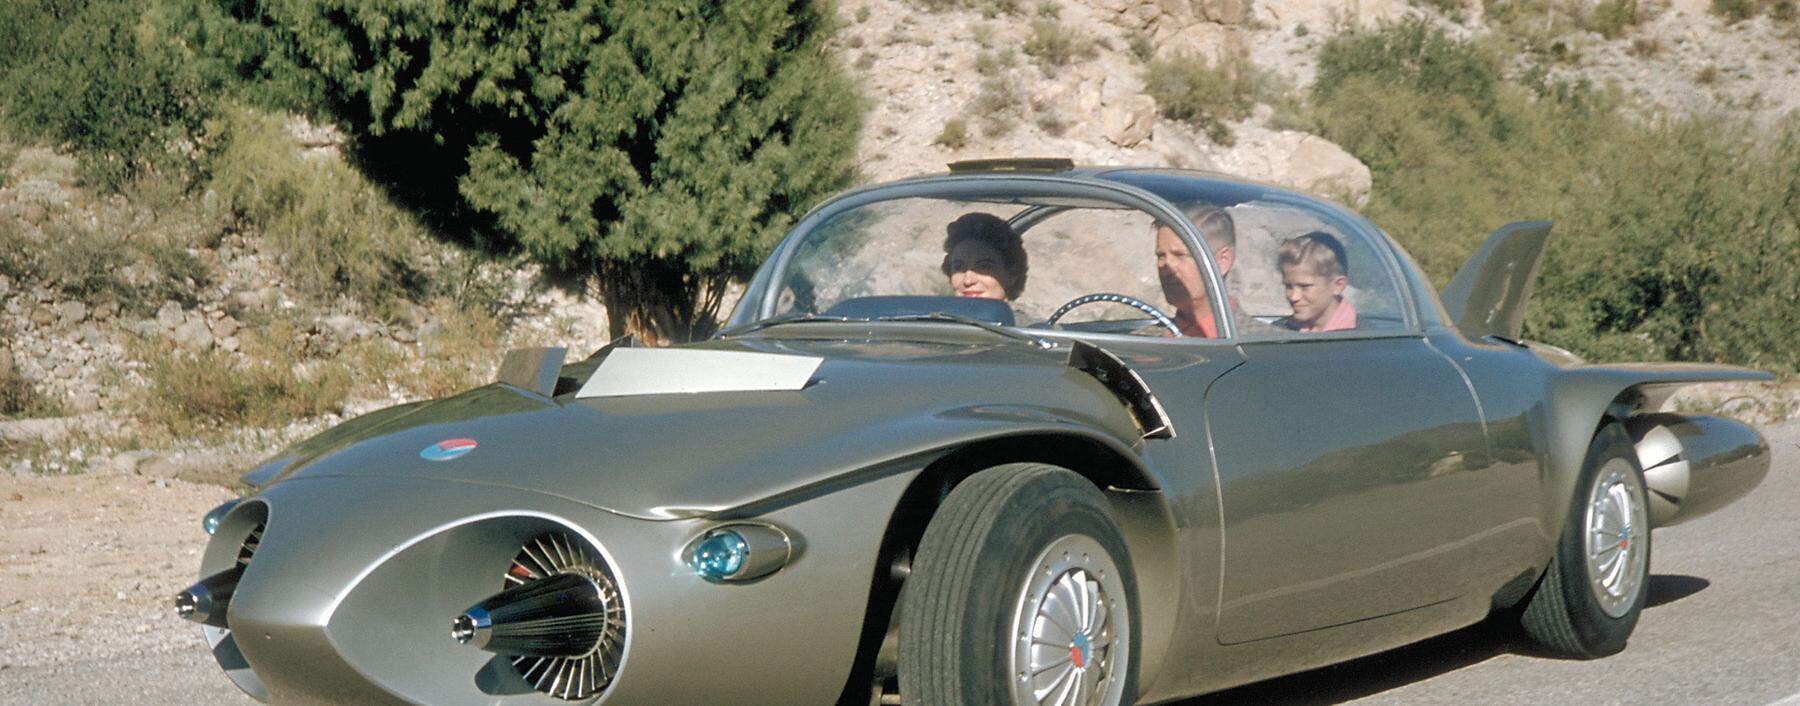 Die Zukunft 1956: Das GM-Konzeptauto Firebird II nahm Vernetzung und autonomes Fahren vorweg. Die Technologie dafür kommt jetzt zur Reife – samt neuer Elektronikarchitektur.